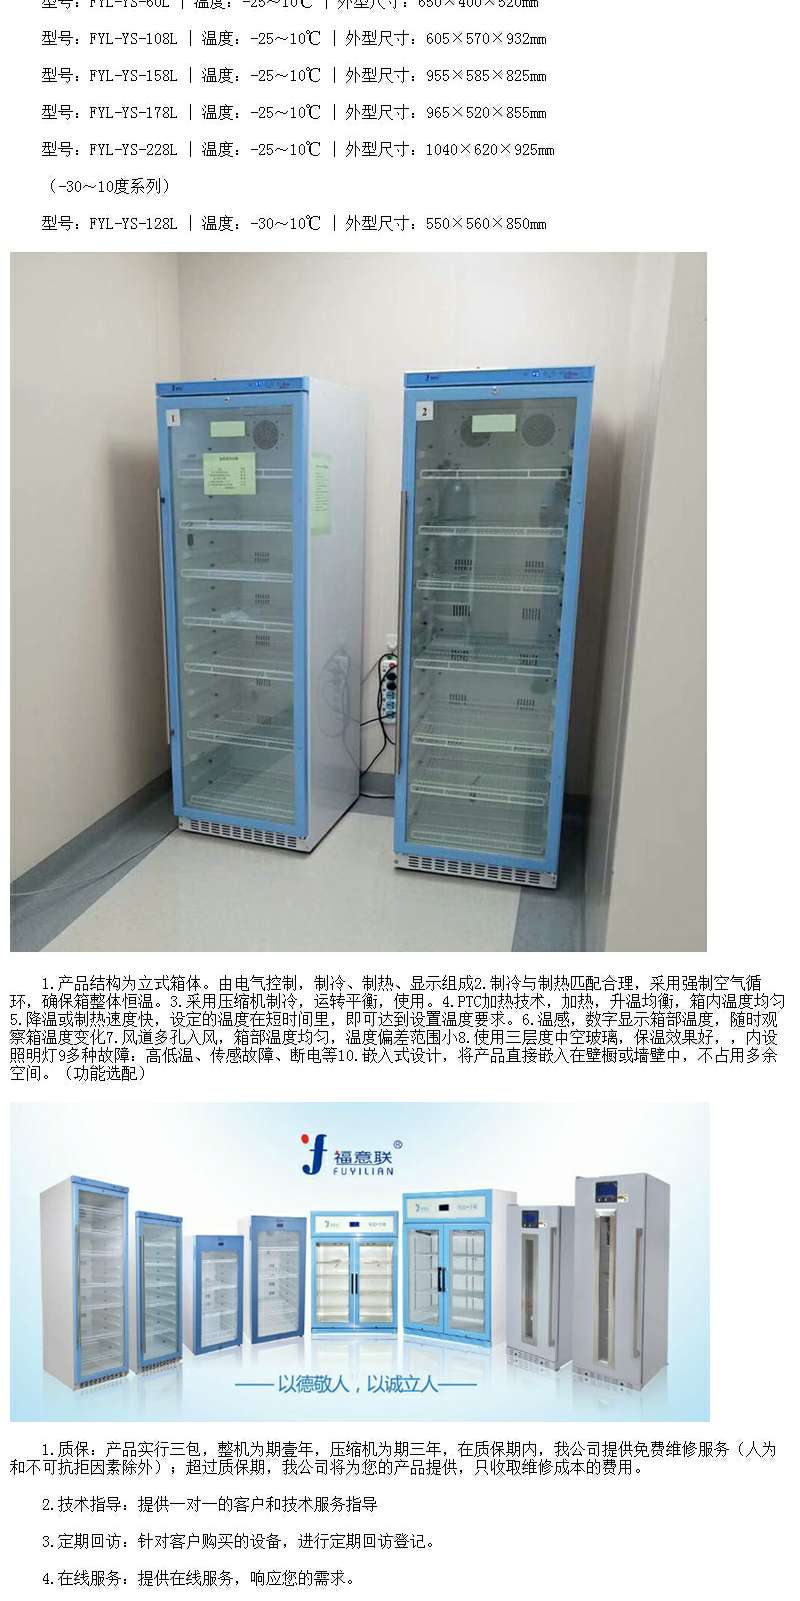 单门/双门医用冷藏箱，2-8℃，试剂盒储存，根据存放量选择单门或双门